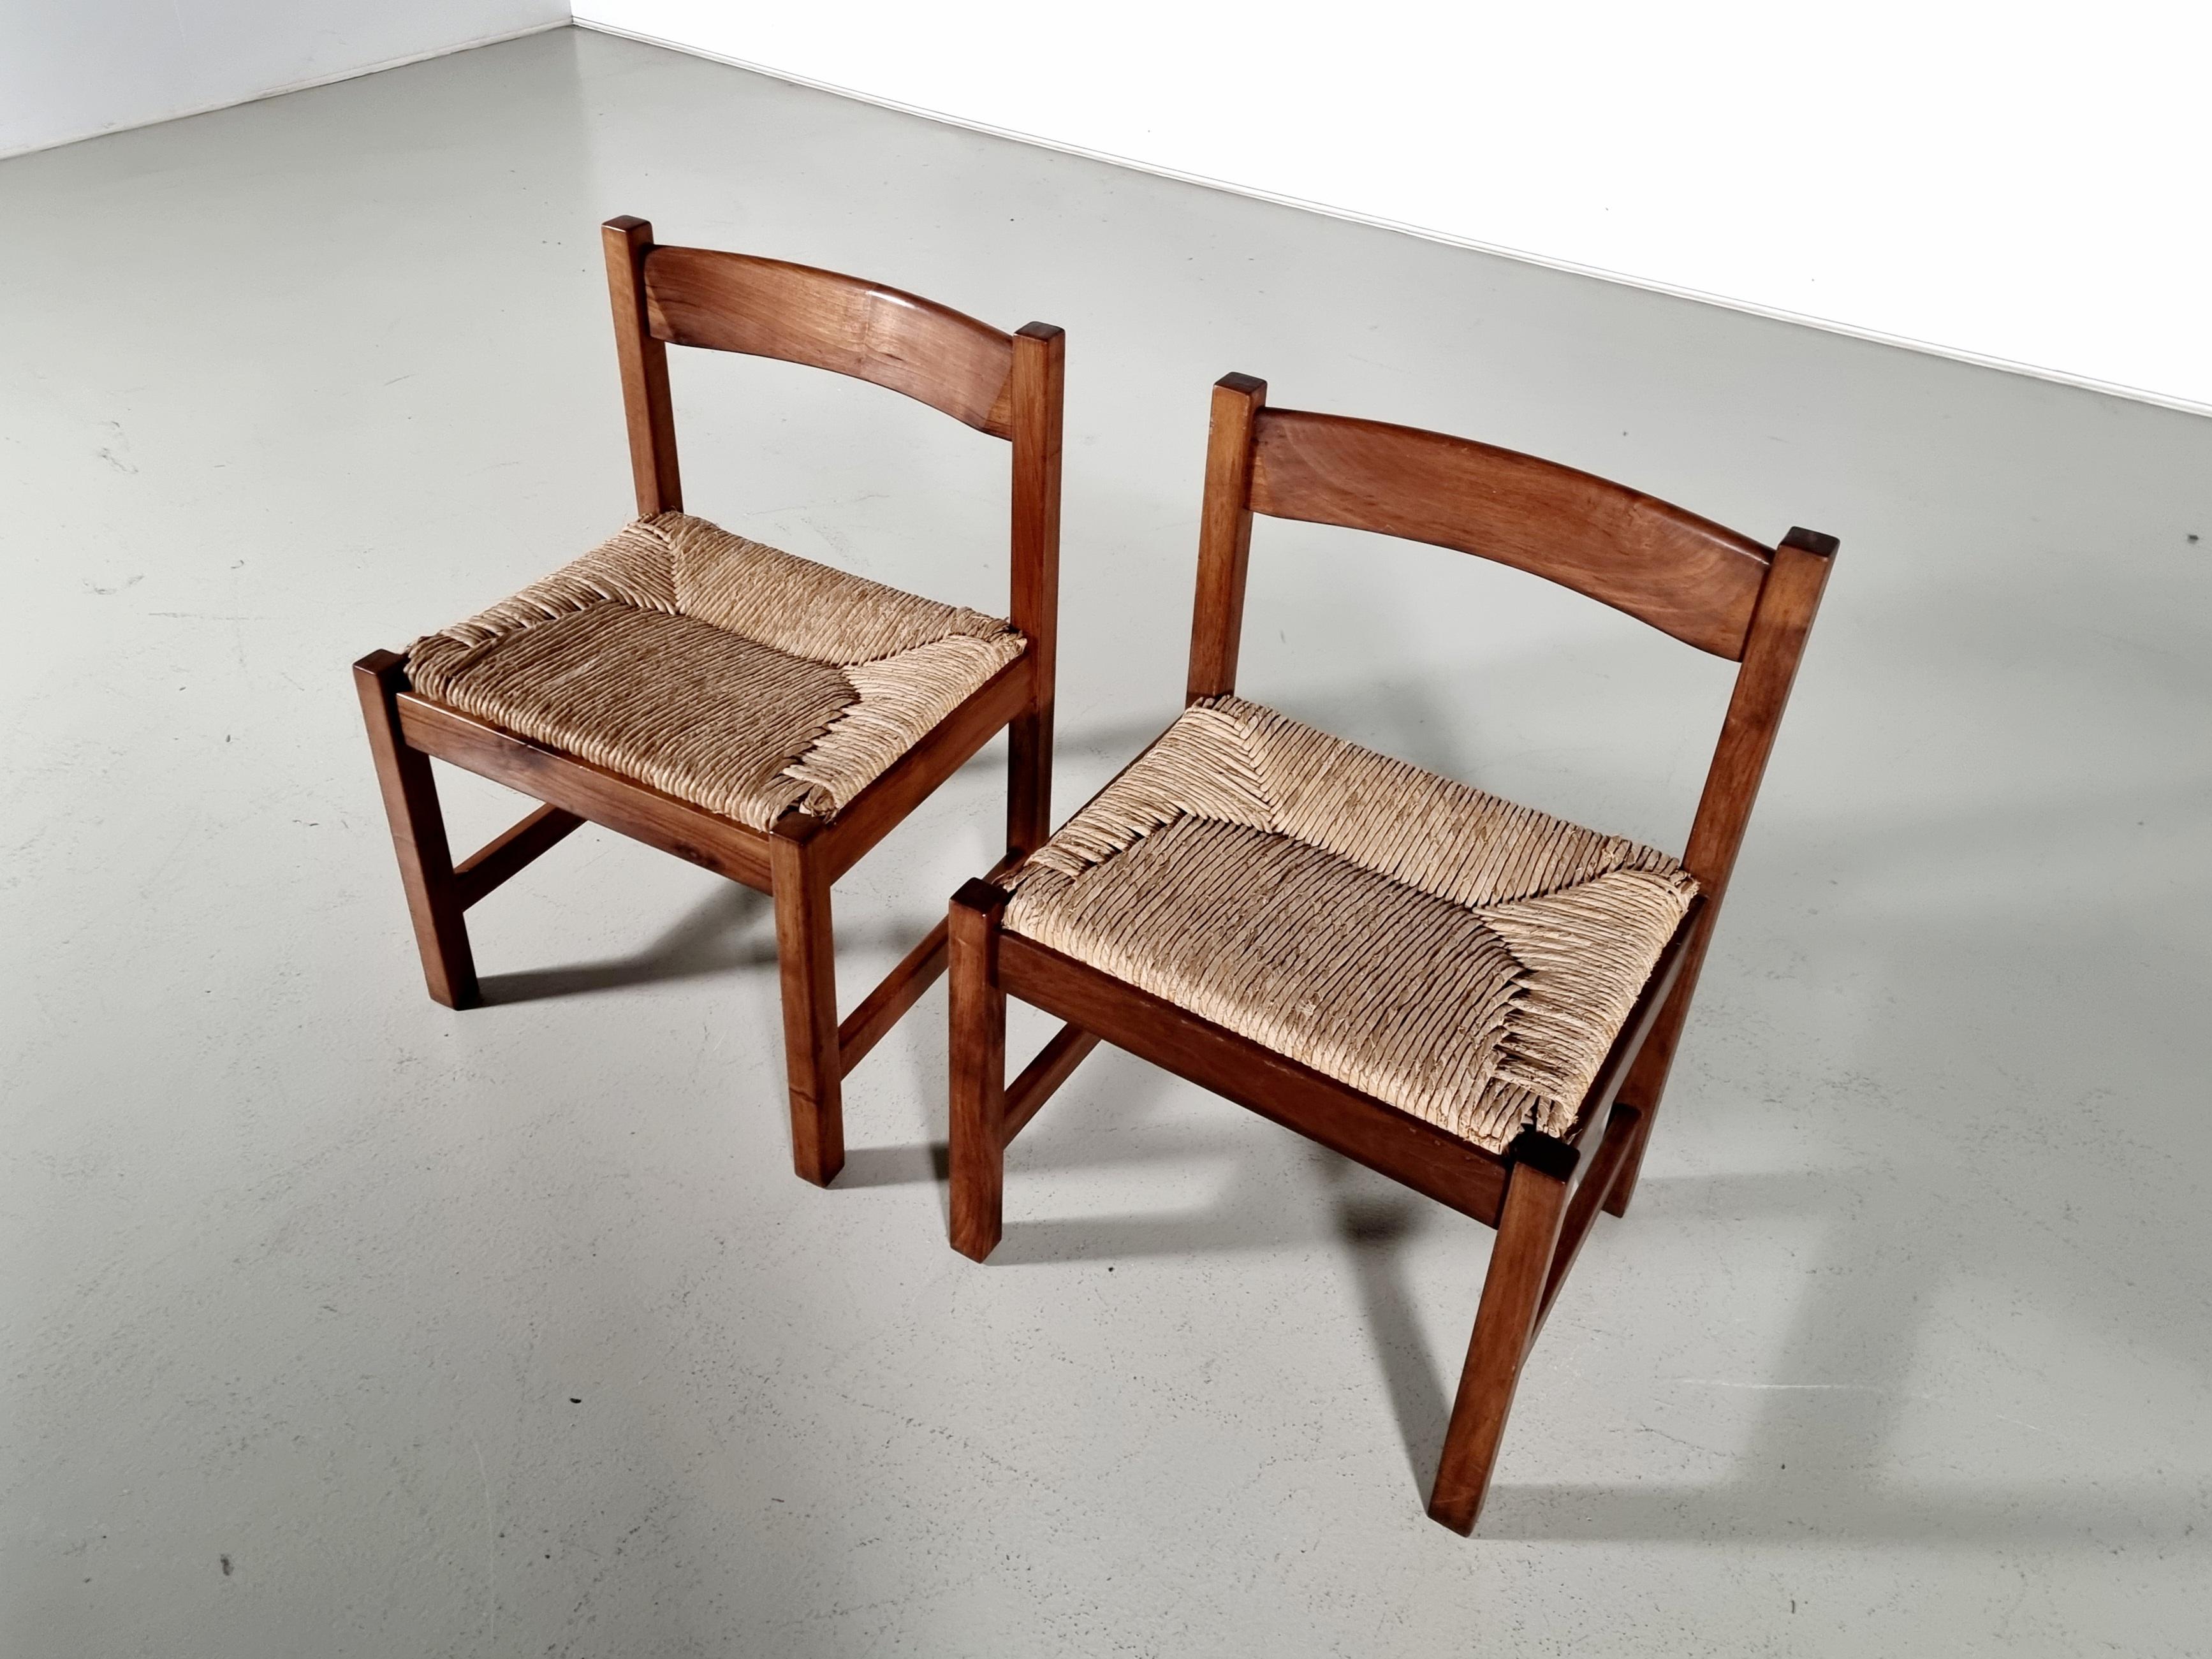 Torbecchia Chairs in walnut and rush, Giovanni Michelucci for Poltronova, 1960s For Sale 5